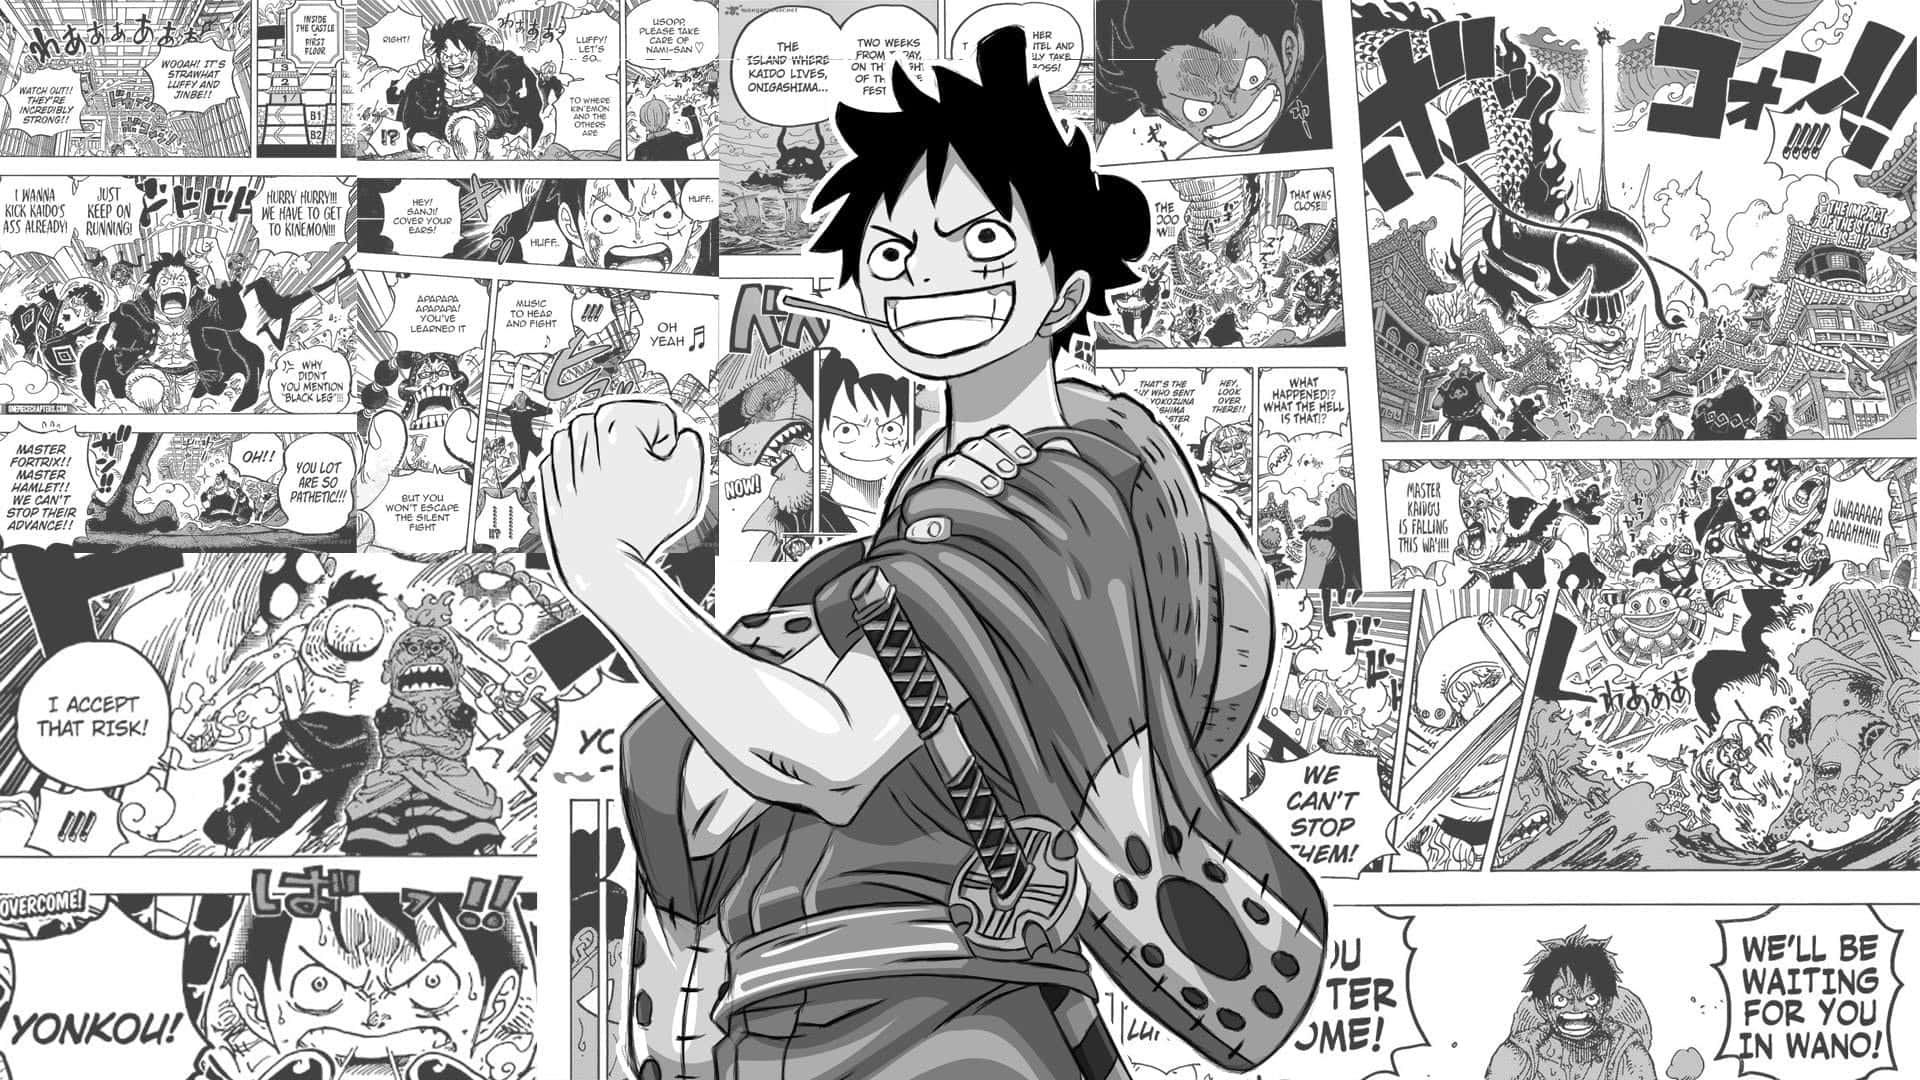 [100+] Fondos de fotos de One Piece Manga | Wallpapers.com